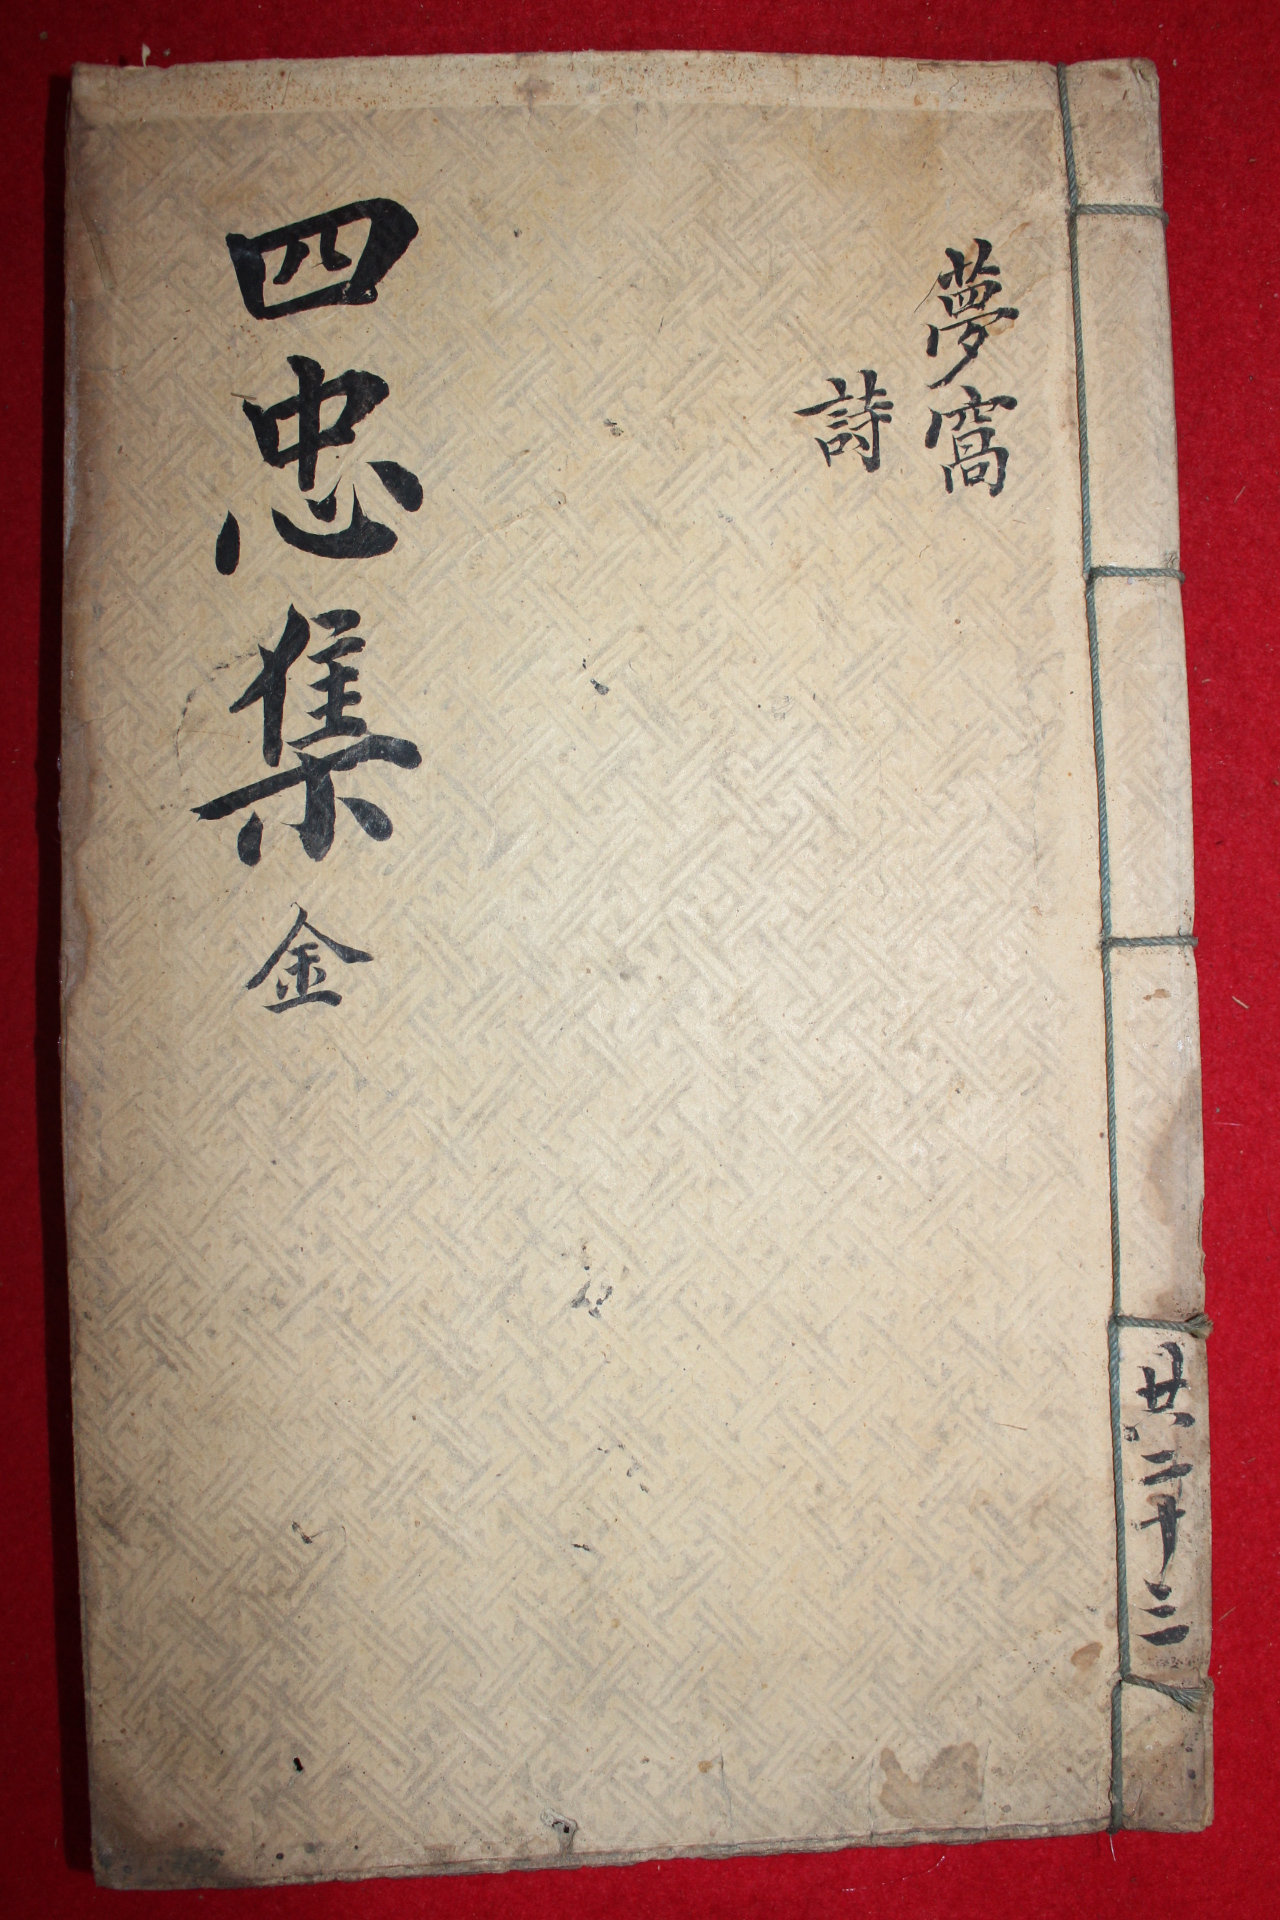 1758년 금속활자본(校書館印書體字) 김창집(金昌集) 몽와집(夢窩集)권1,2  1책